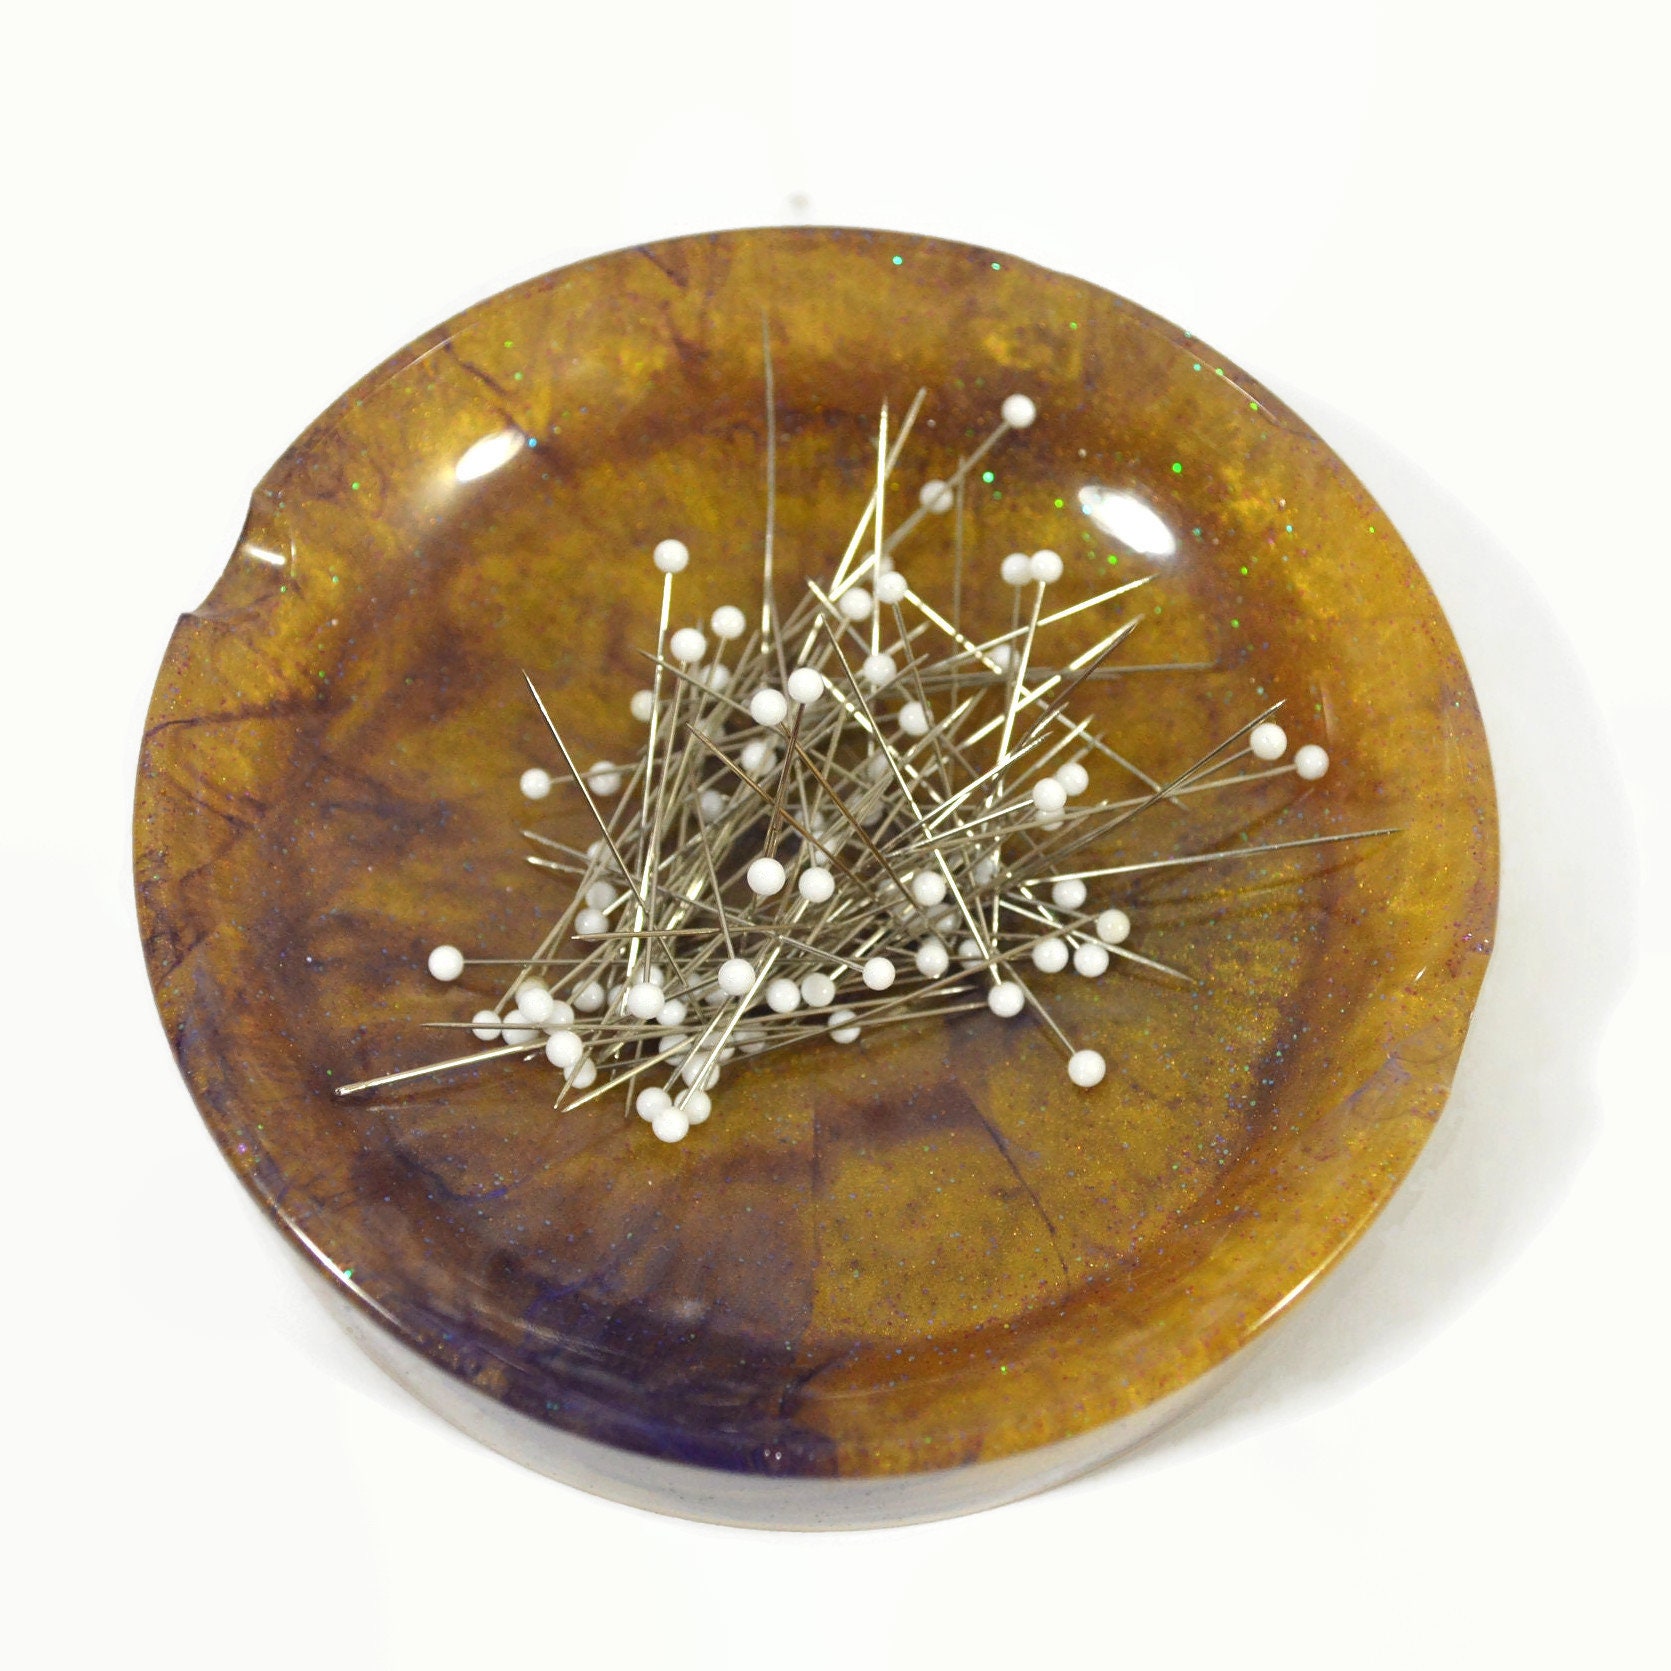 BFYDOAA Magnetic Bowl Pin Dish with 150pcs Bead Needles Sewing Pins,Round  Magnetic Sewing Cushion, Magnetic Pin Holder for Sewing Needles Push Pins  Hair Pins(Green) - Yahoo Shopping